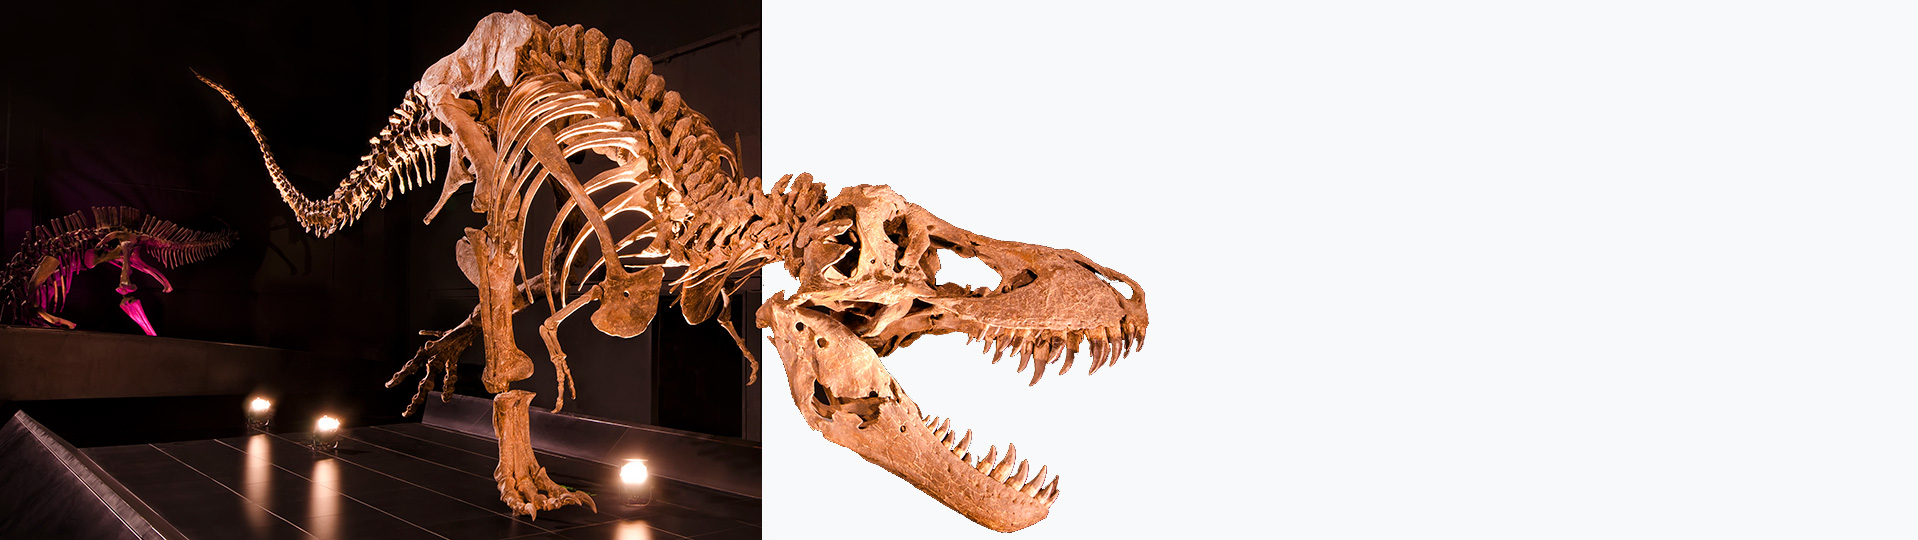 テルエルの古生物学博物館にあるティラノサウルス・レックス